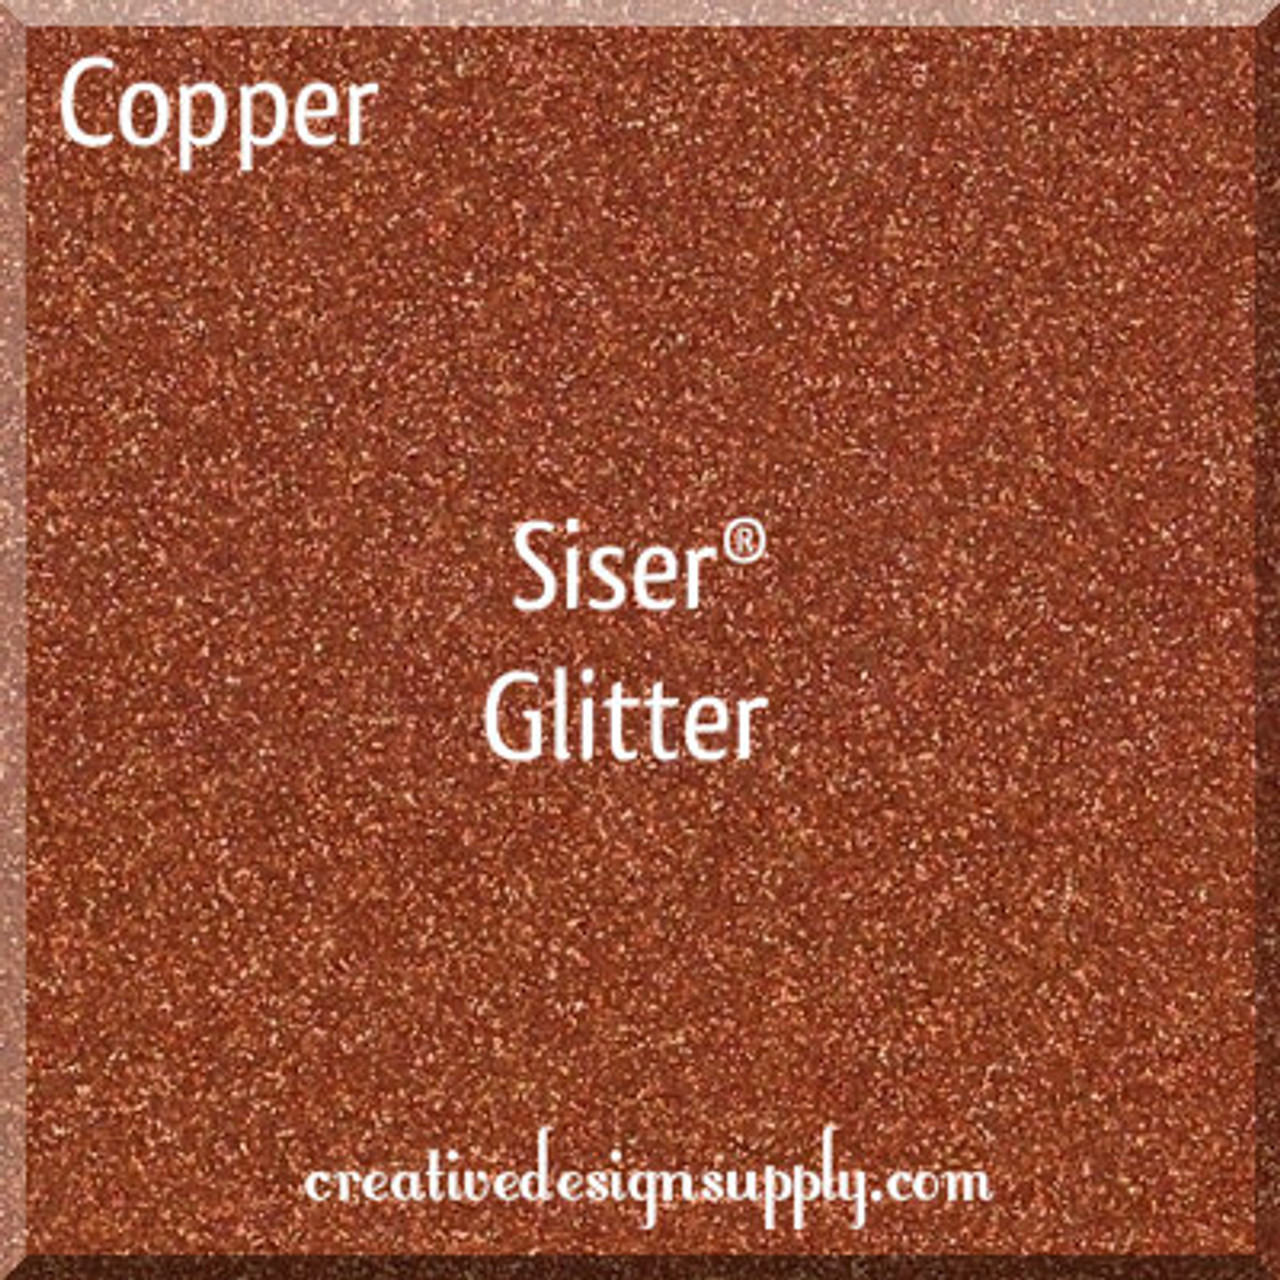 Copper Siser Glitter 20"